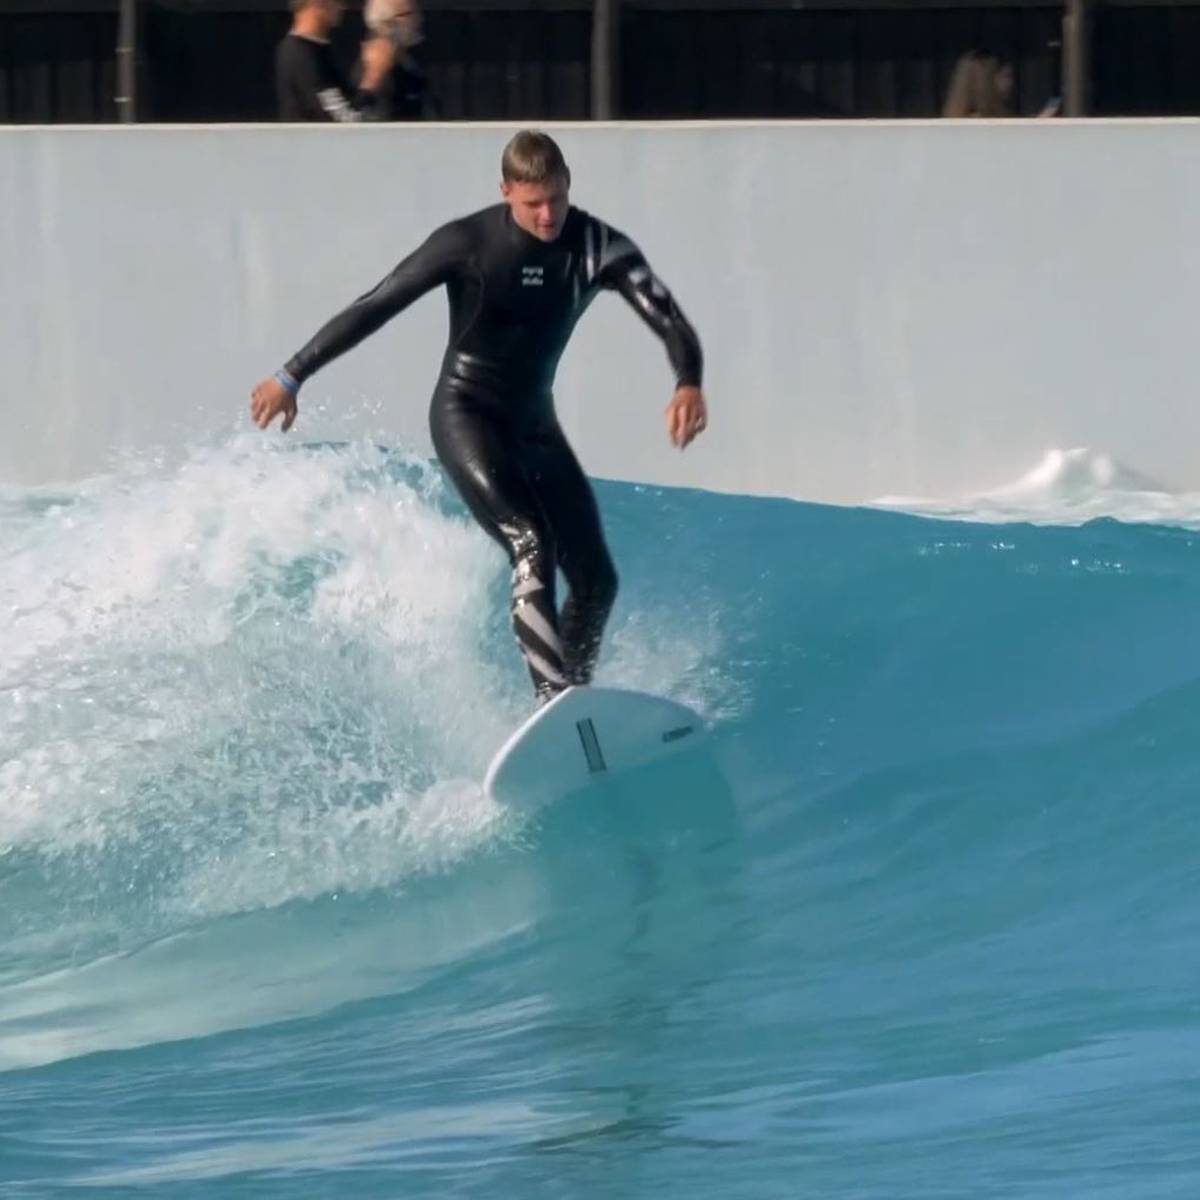 Vom Asphalt auf die Welle: Mick zeigt seine Surfkünste